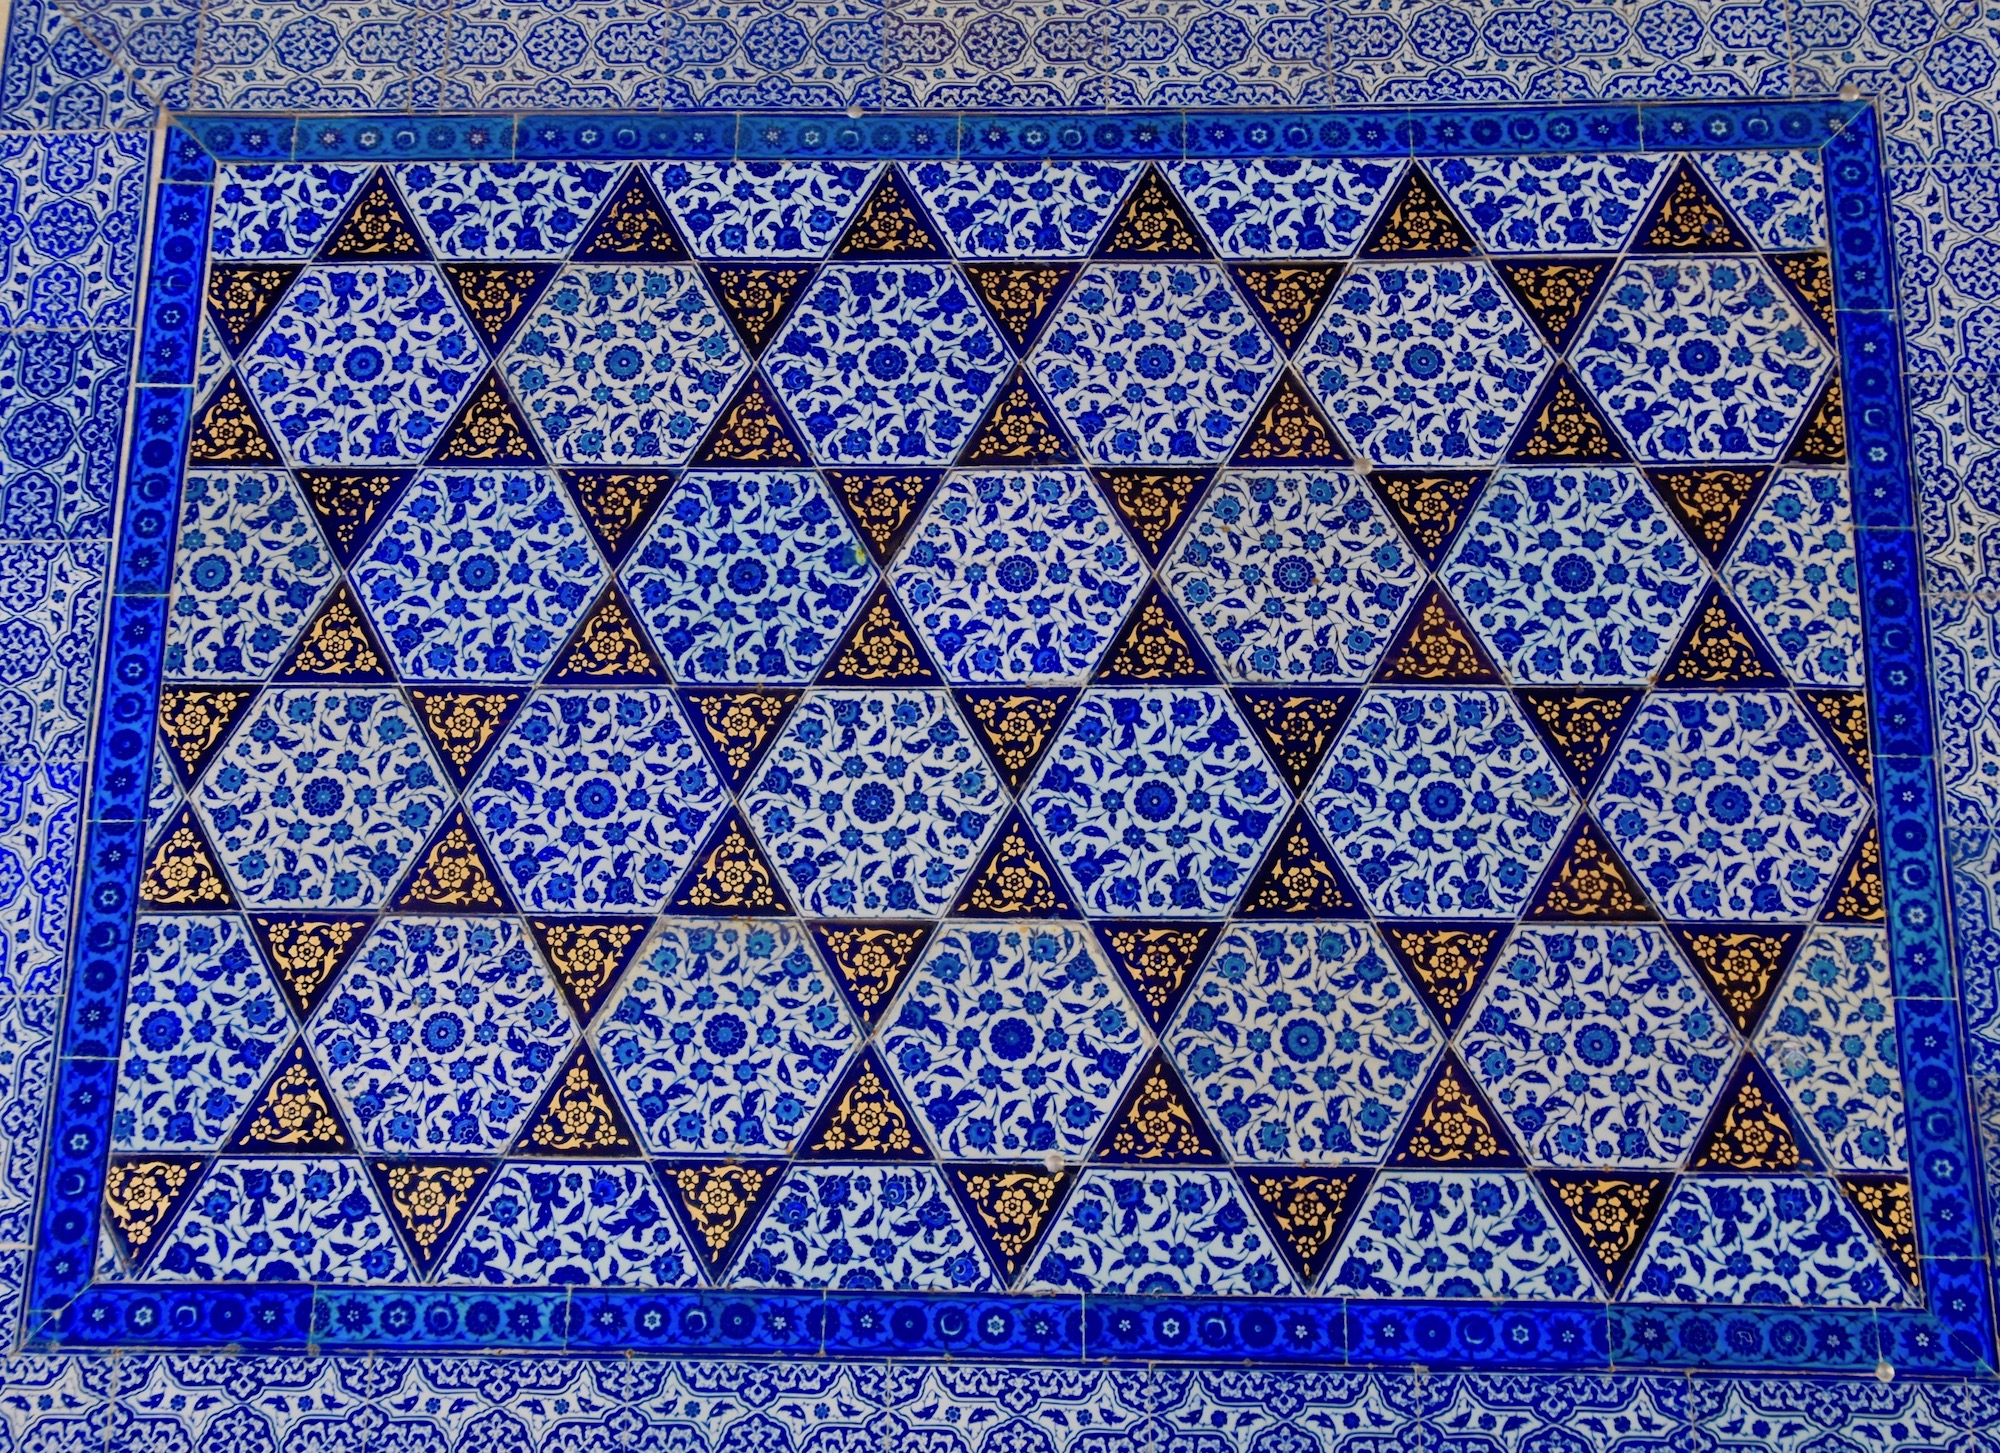 Tile in the Baghdad Kiosk, Topkapi Palace